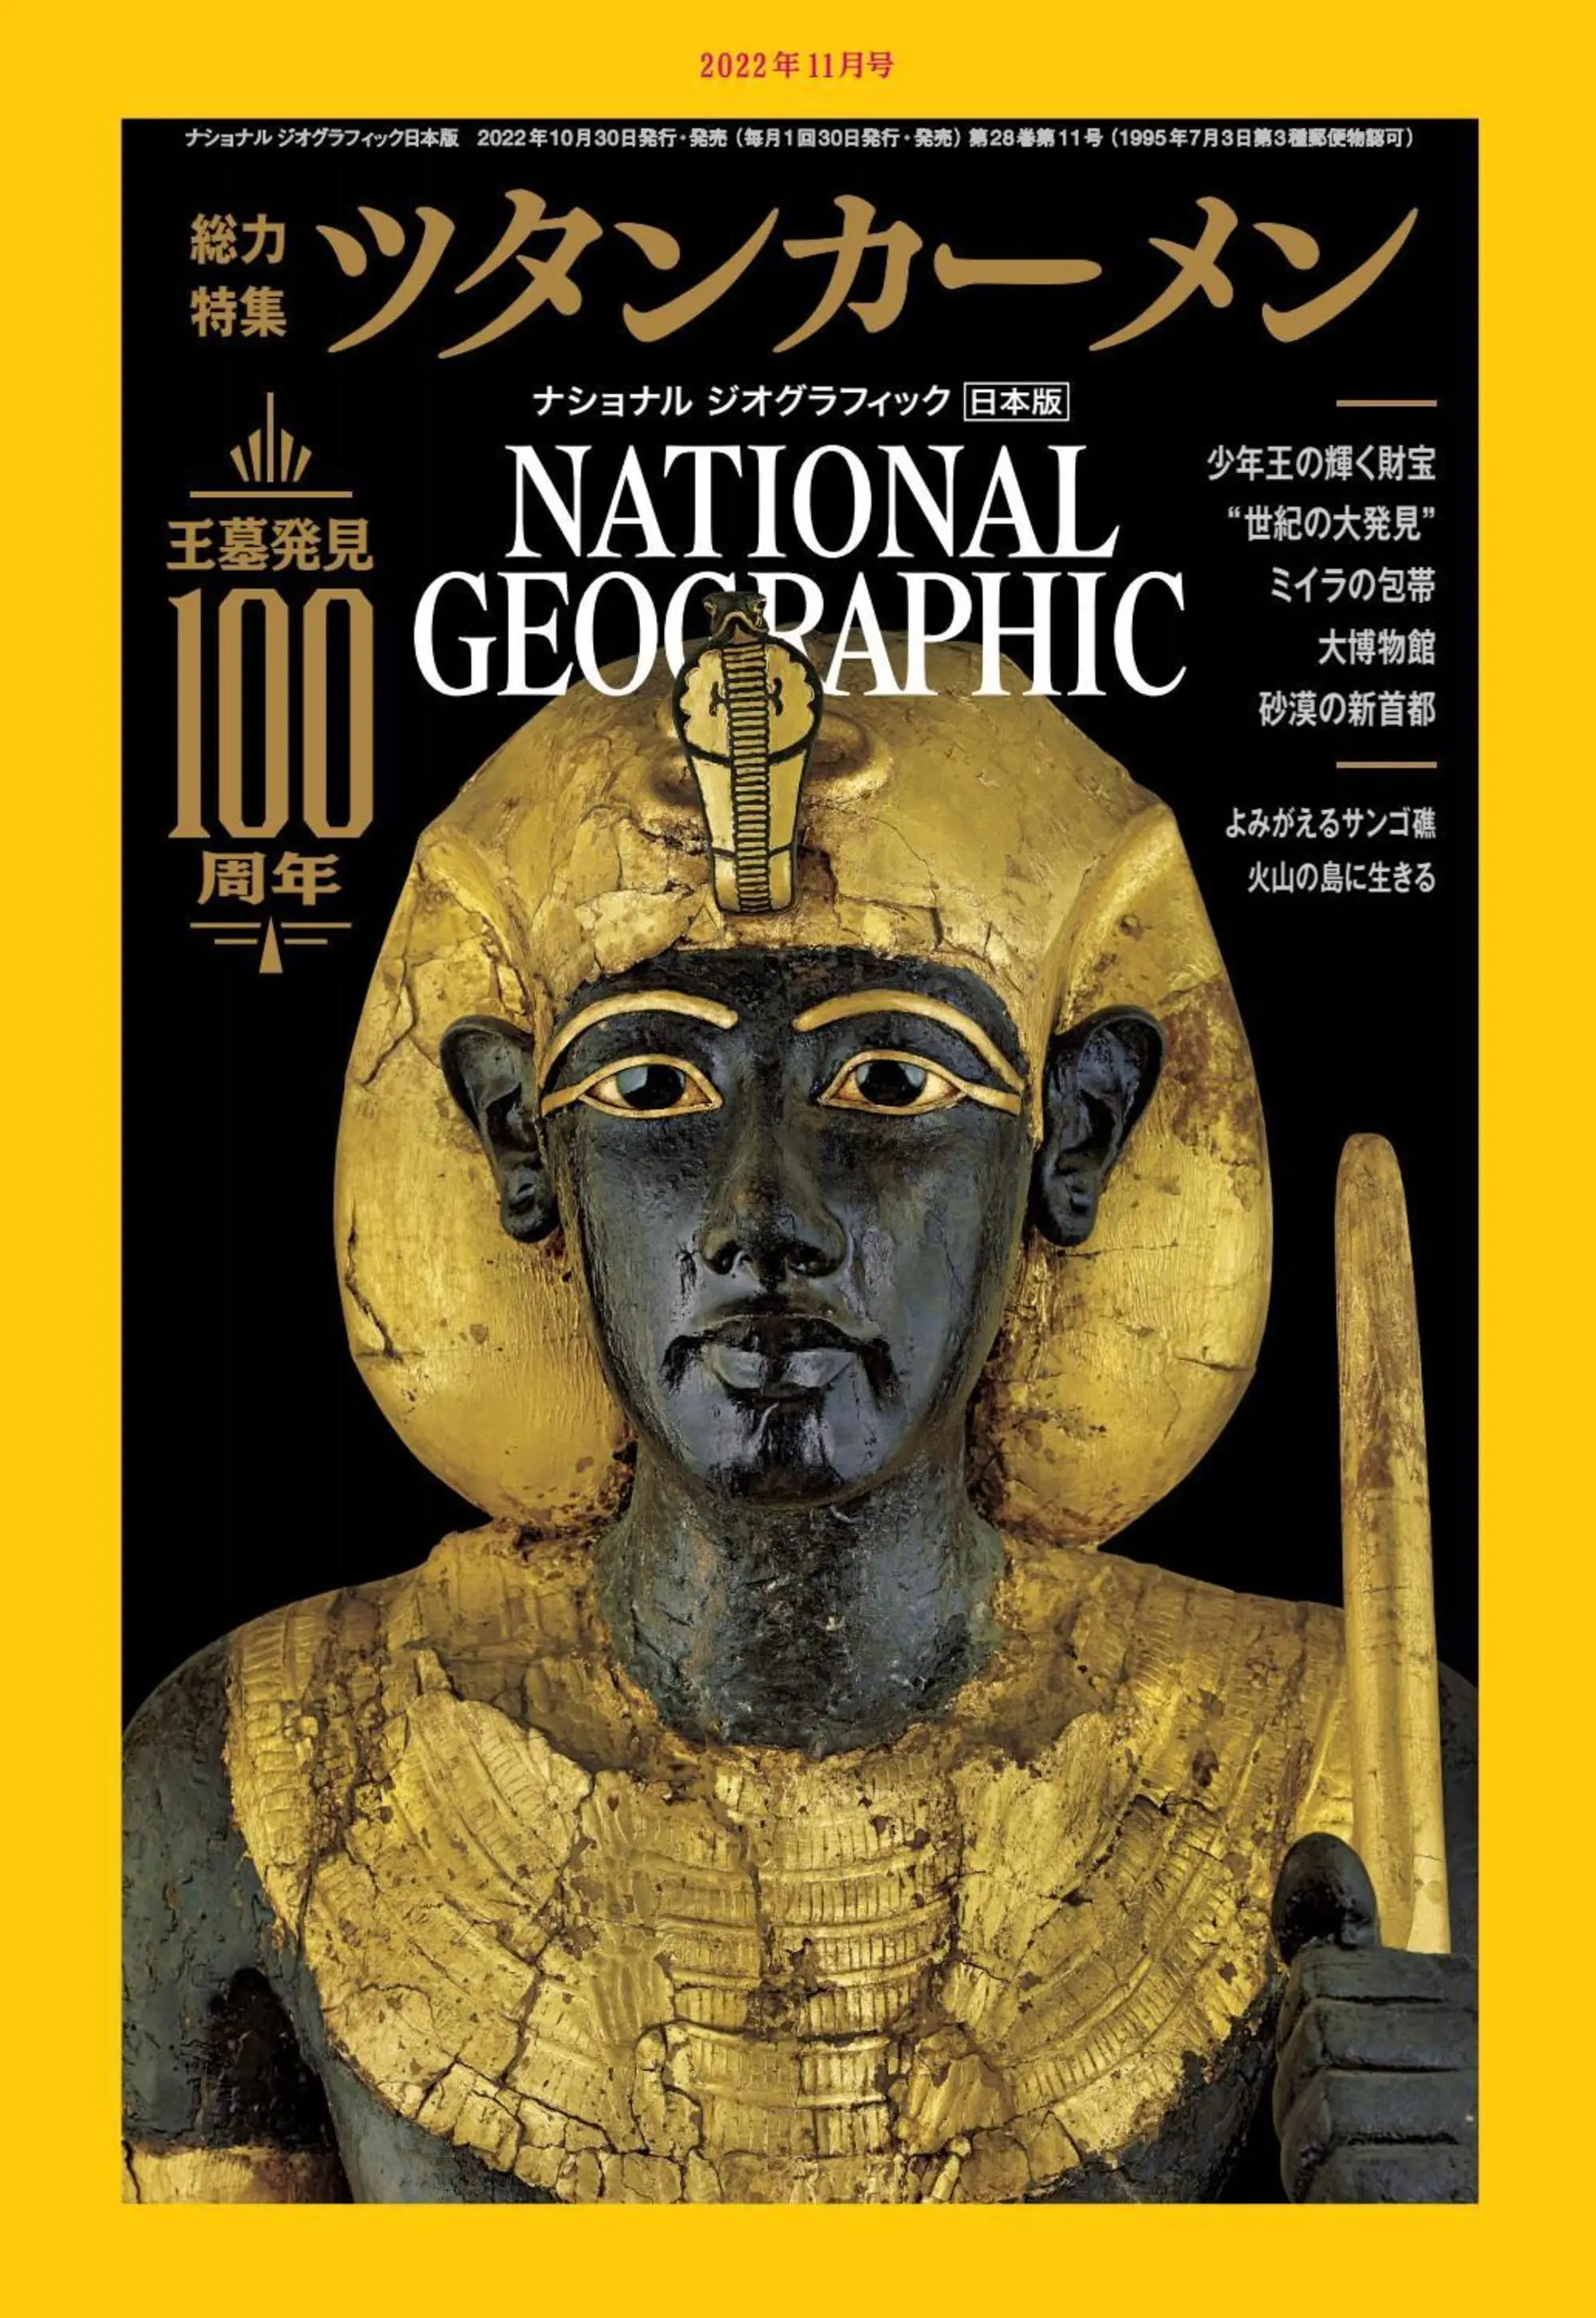 [日本版]國家地理雜志 National Geographic ナショナル ジオグラフィック電子版 2022年11月